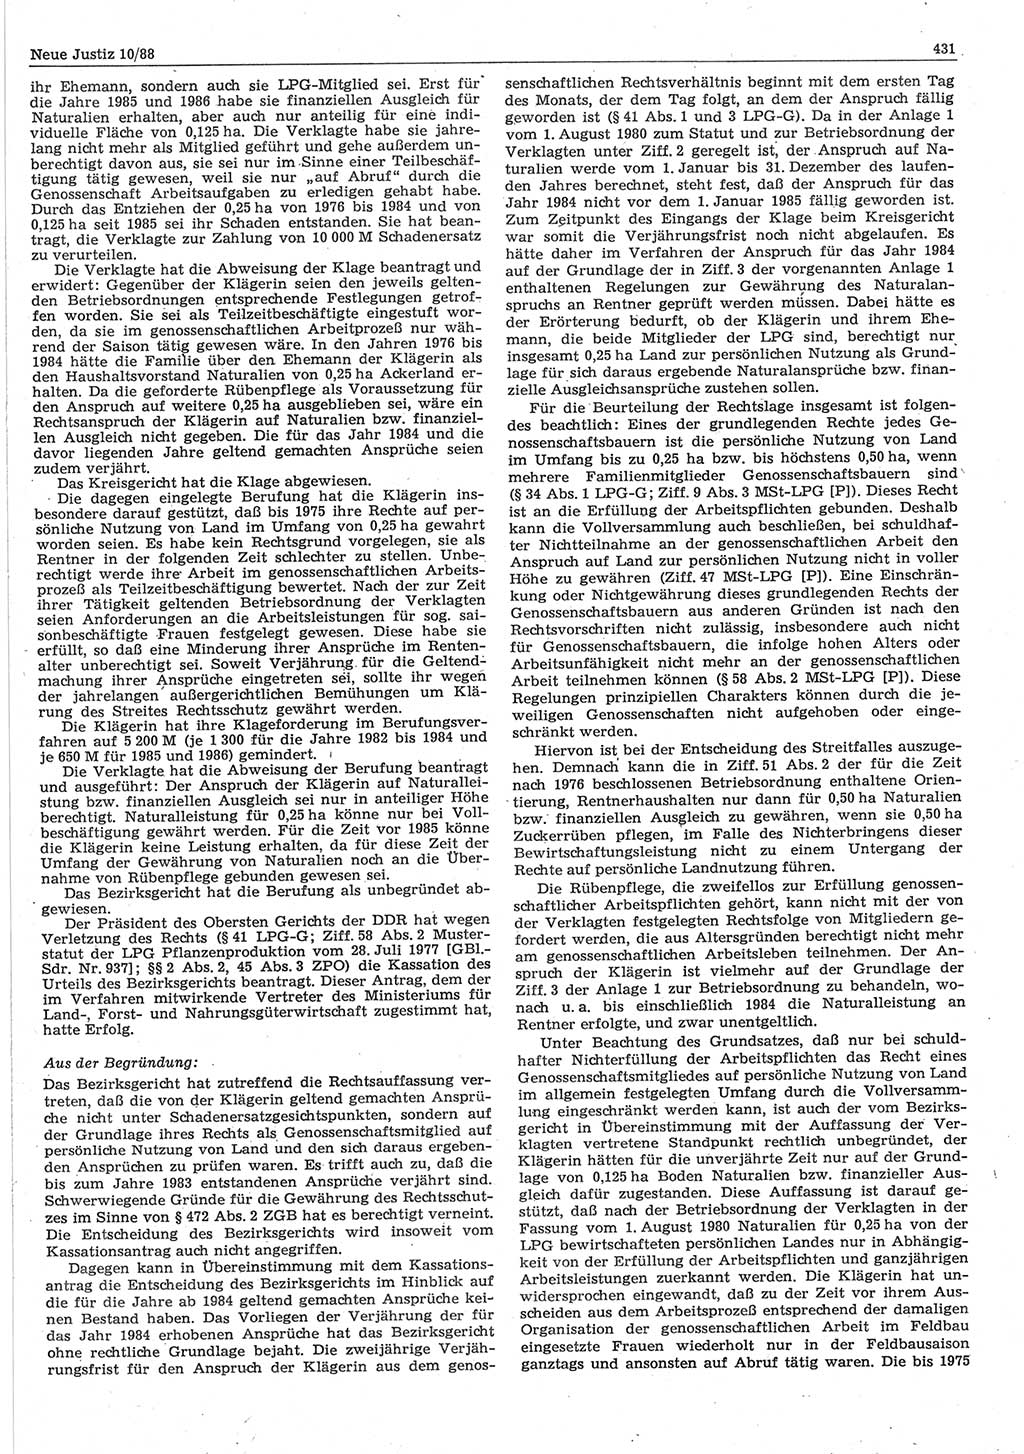 Neue Justiz (NJ), Zeitschrift für sozialistisches Recht und Gesetzlichkeit [Deutsche Demokratische Republik (DDR)], 42. Jahrgang 1988, Seite 431 (NJ DDR 1988, S. 431)